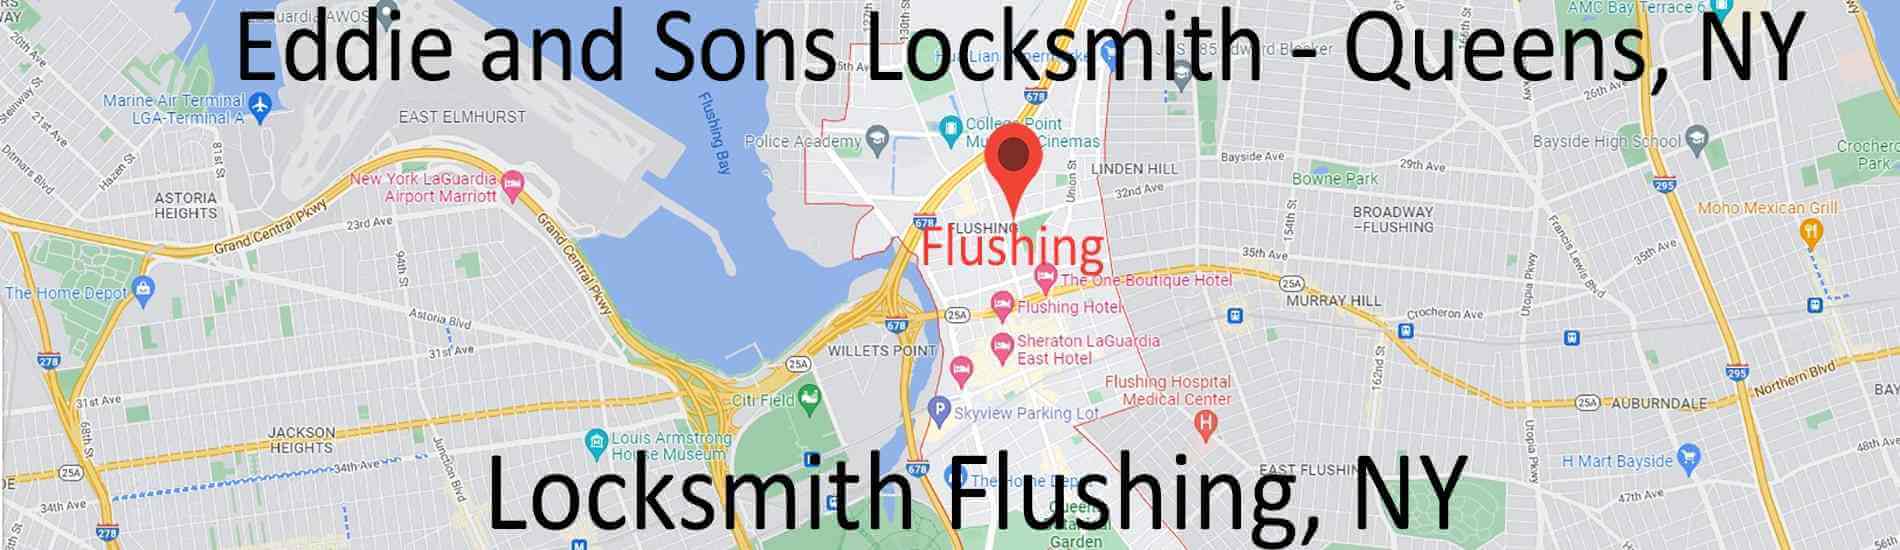 flushing-locksmith